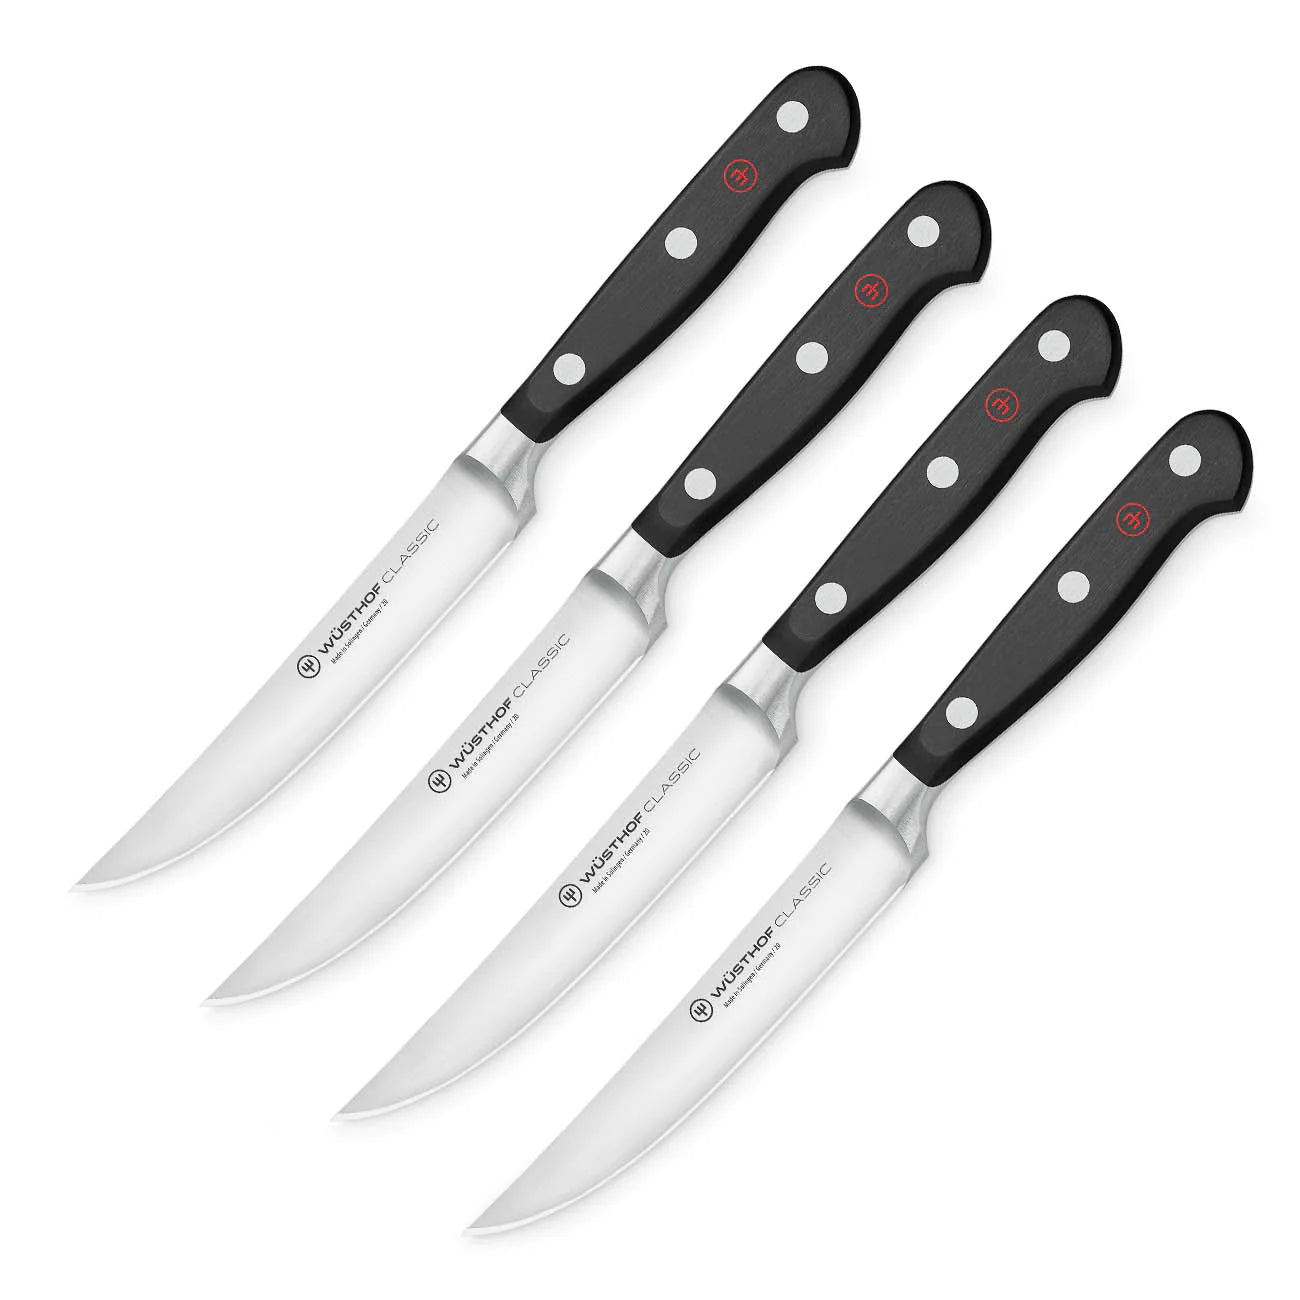 Chef's Steak Knives